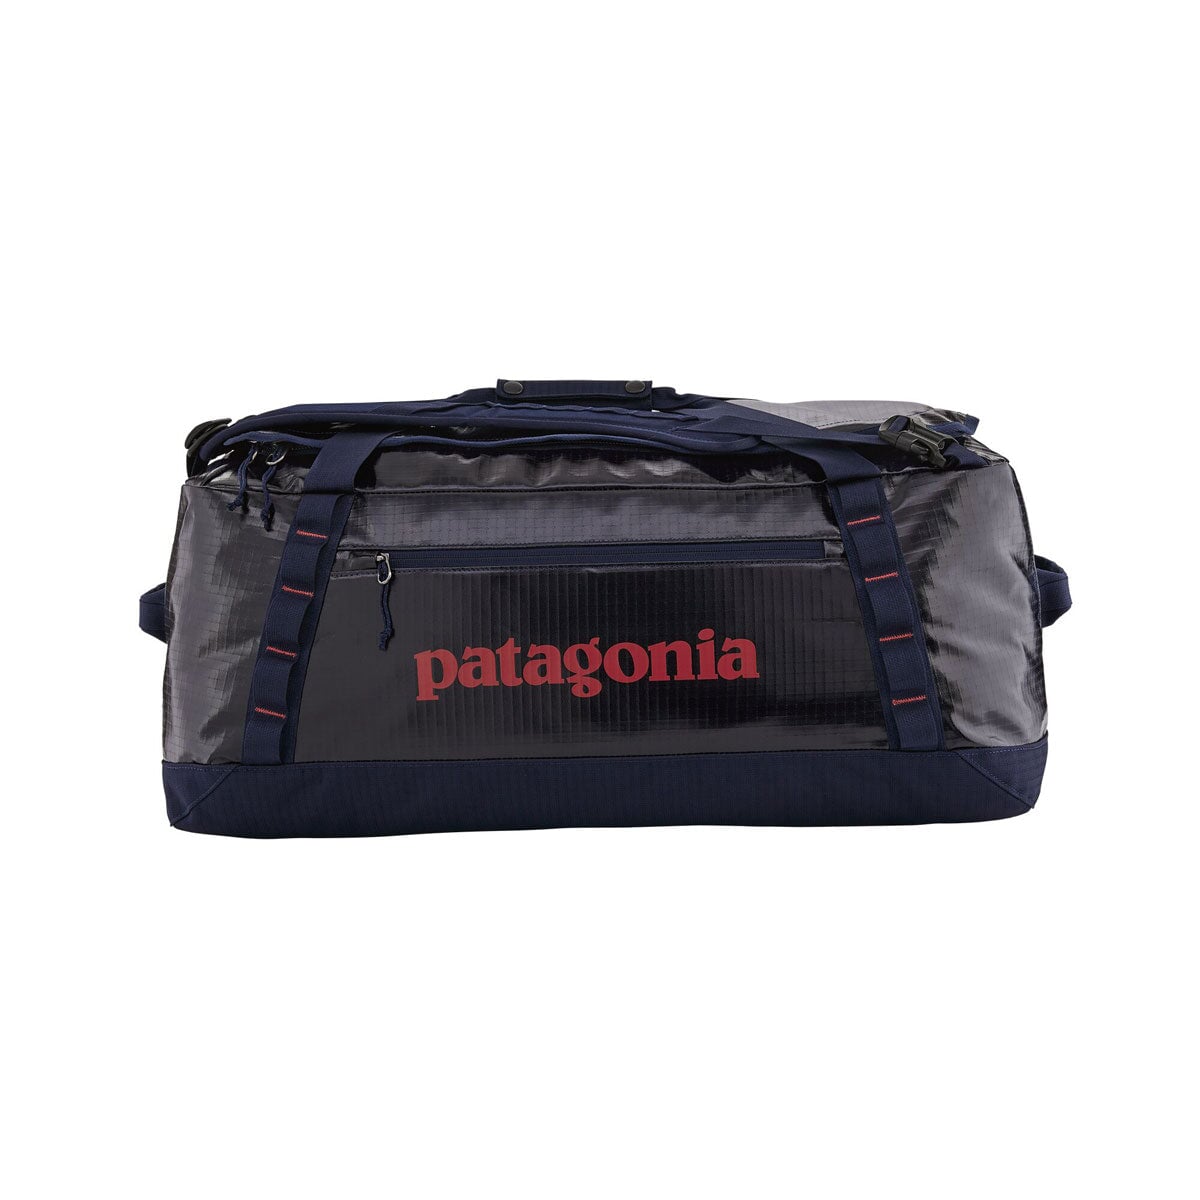 Patagonia Black Hole Duffel Bag 55L - Classic Navy Duffel Bag Patagonia 